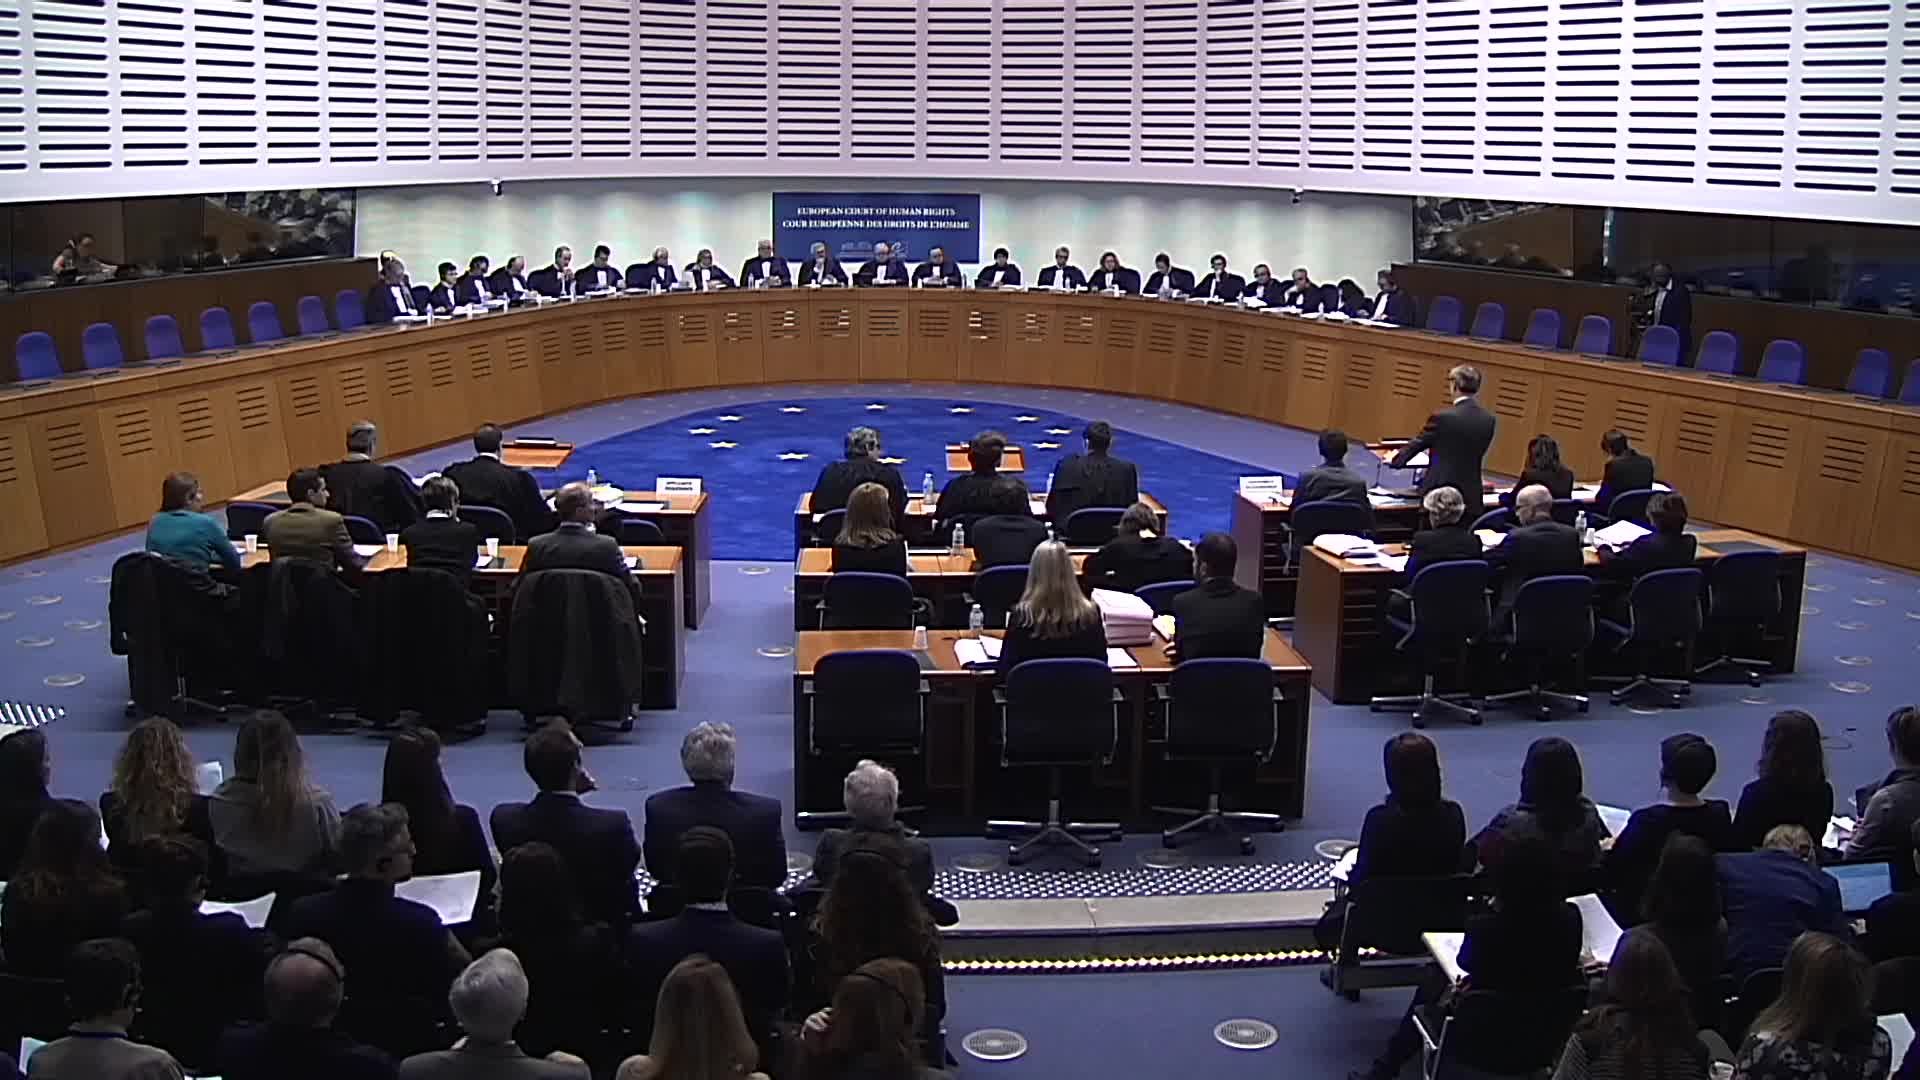 Международный европейский суд